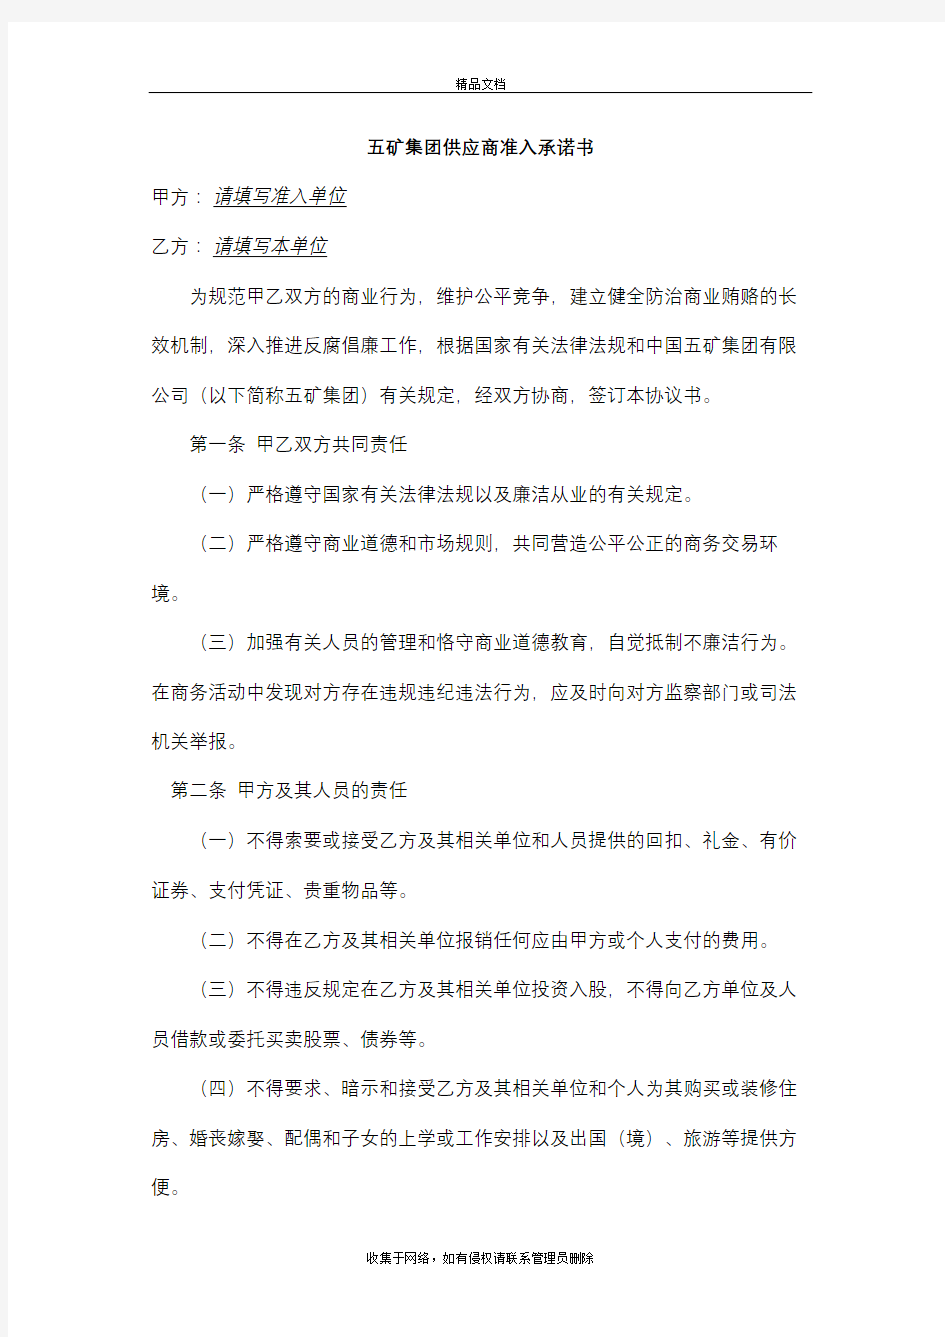 中国五矿集团供应商准入承诺书教程文件